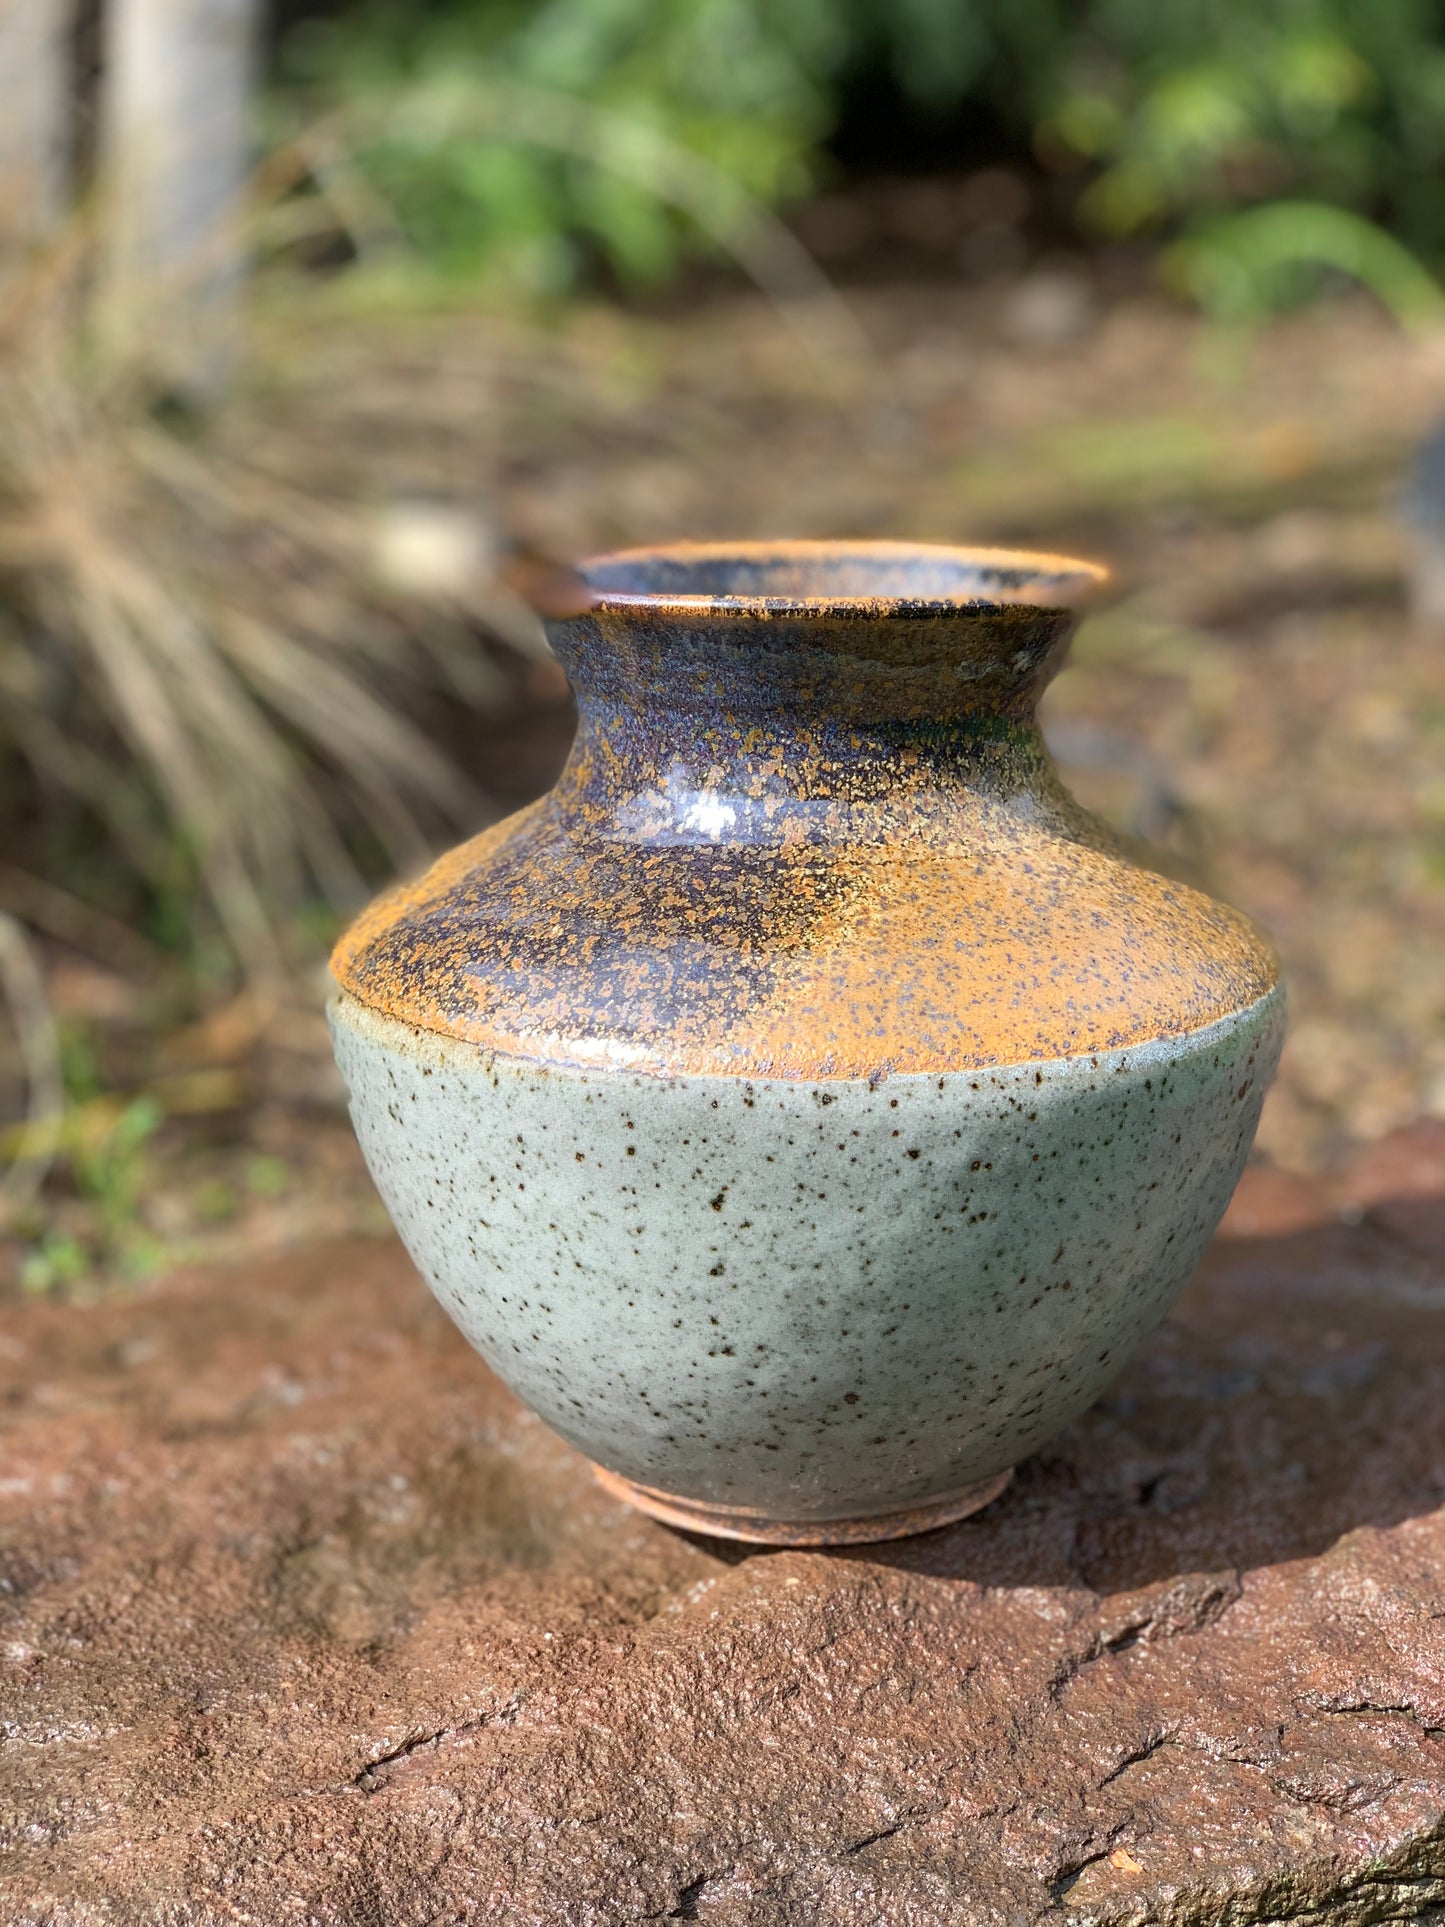 Speckled Short Vase